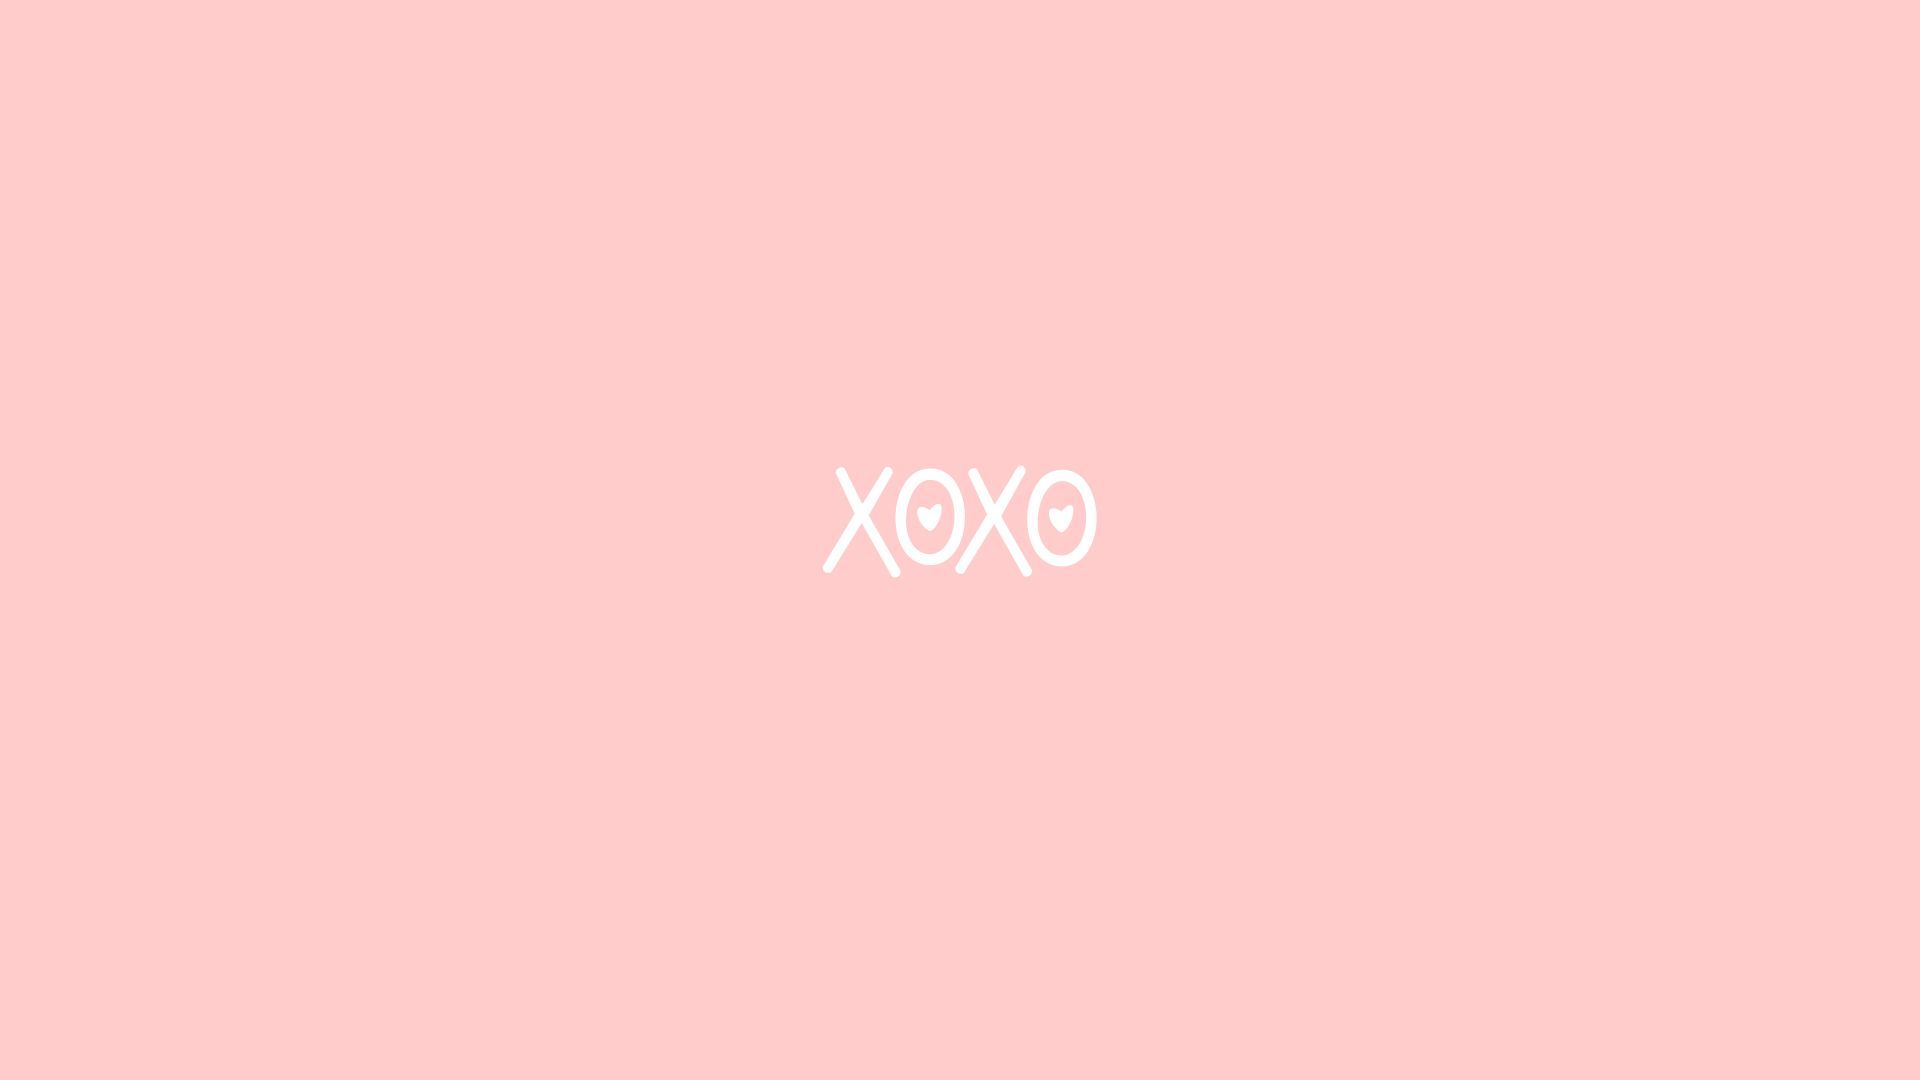 Tinh tế và đáng yêu, những hình nền XOXO hồng sẽ khiến cho màn hình điện thoại của bạn trở nên đáng yêu hơn. Cùng chiêm ngưỡng những hình ảnh đẹp và nổi bật này trong bộ sưu tập Wallpapers XOXO hồng.